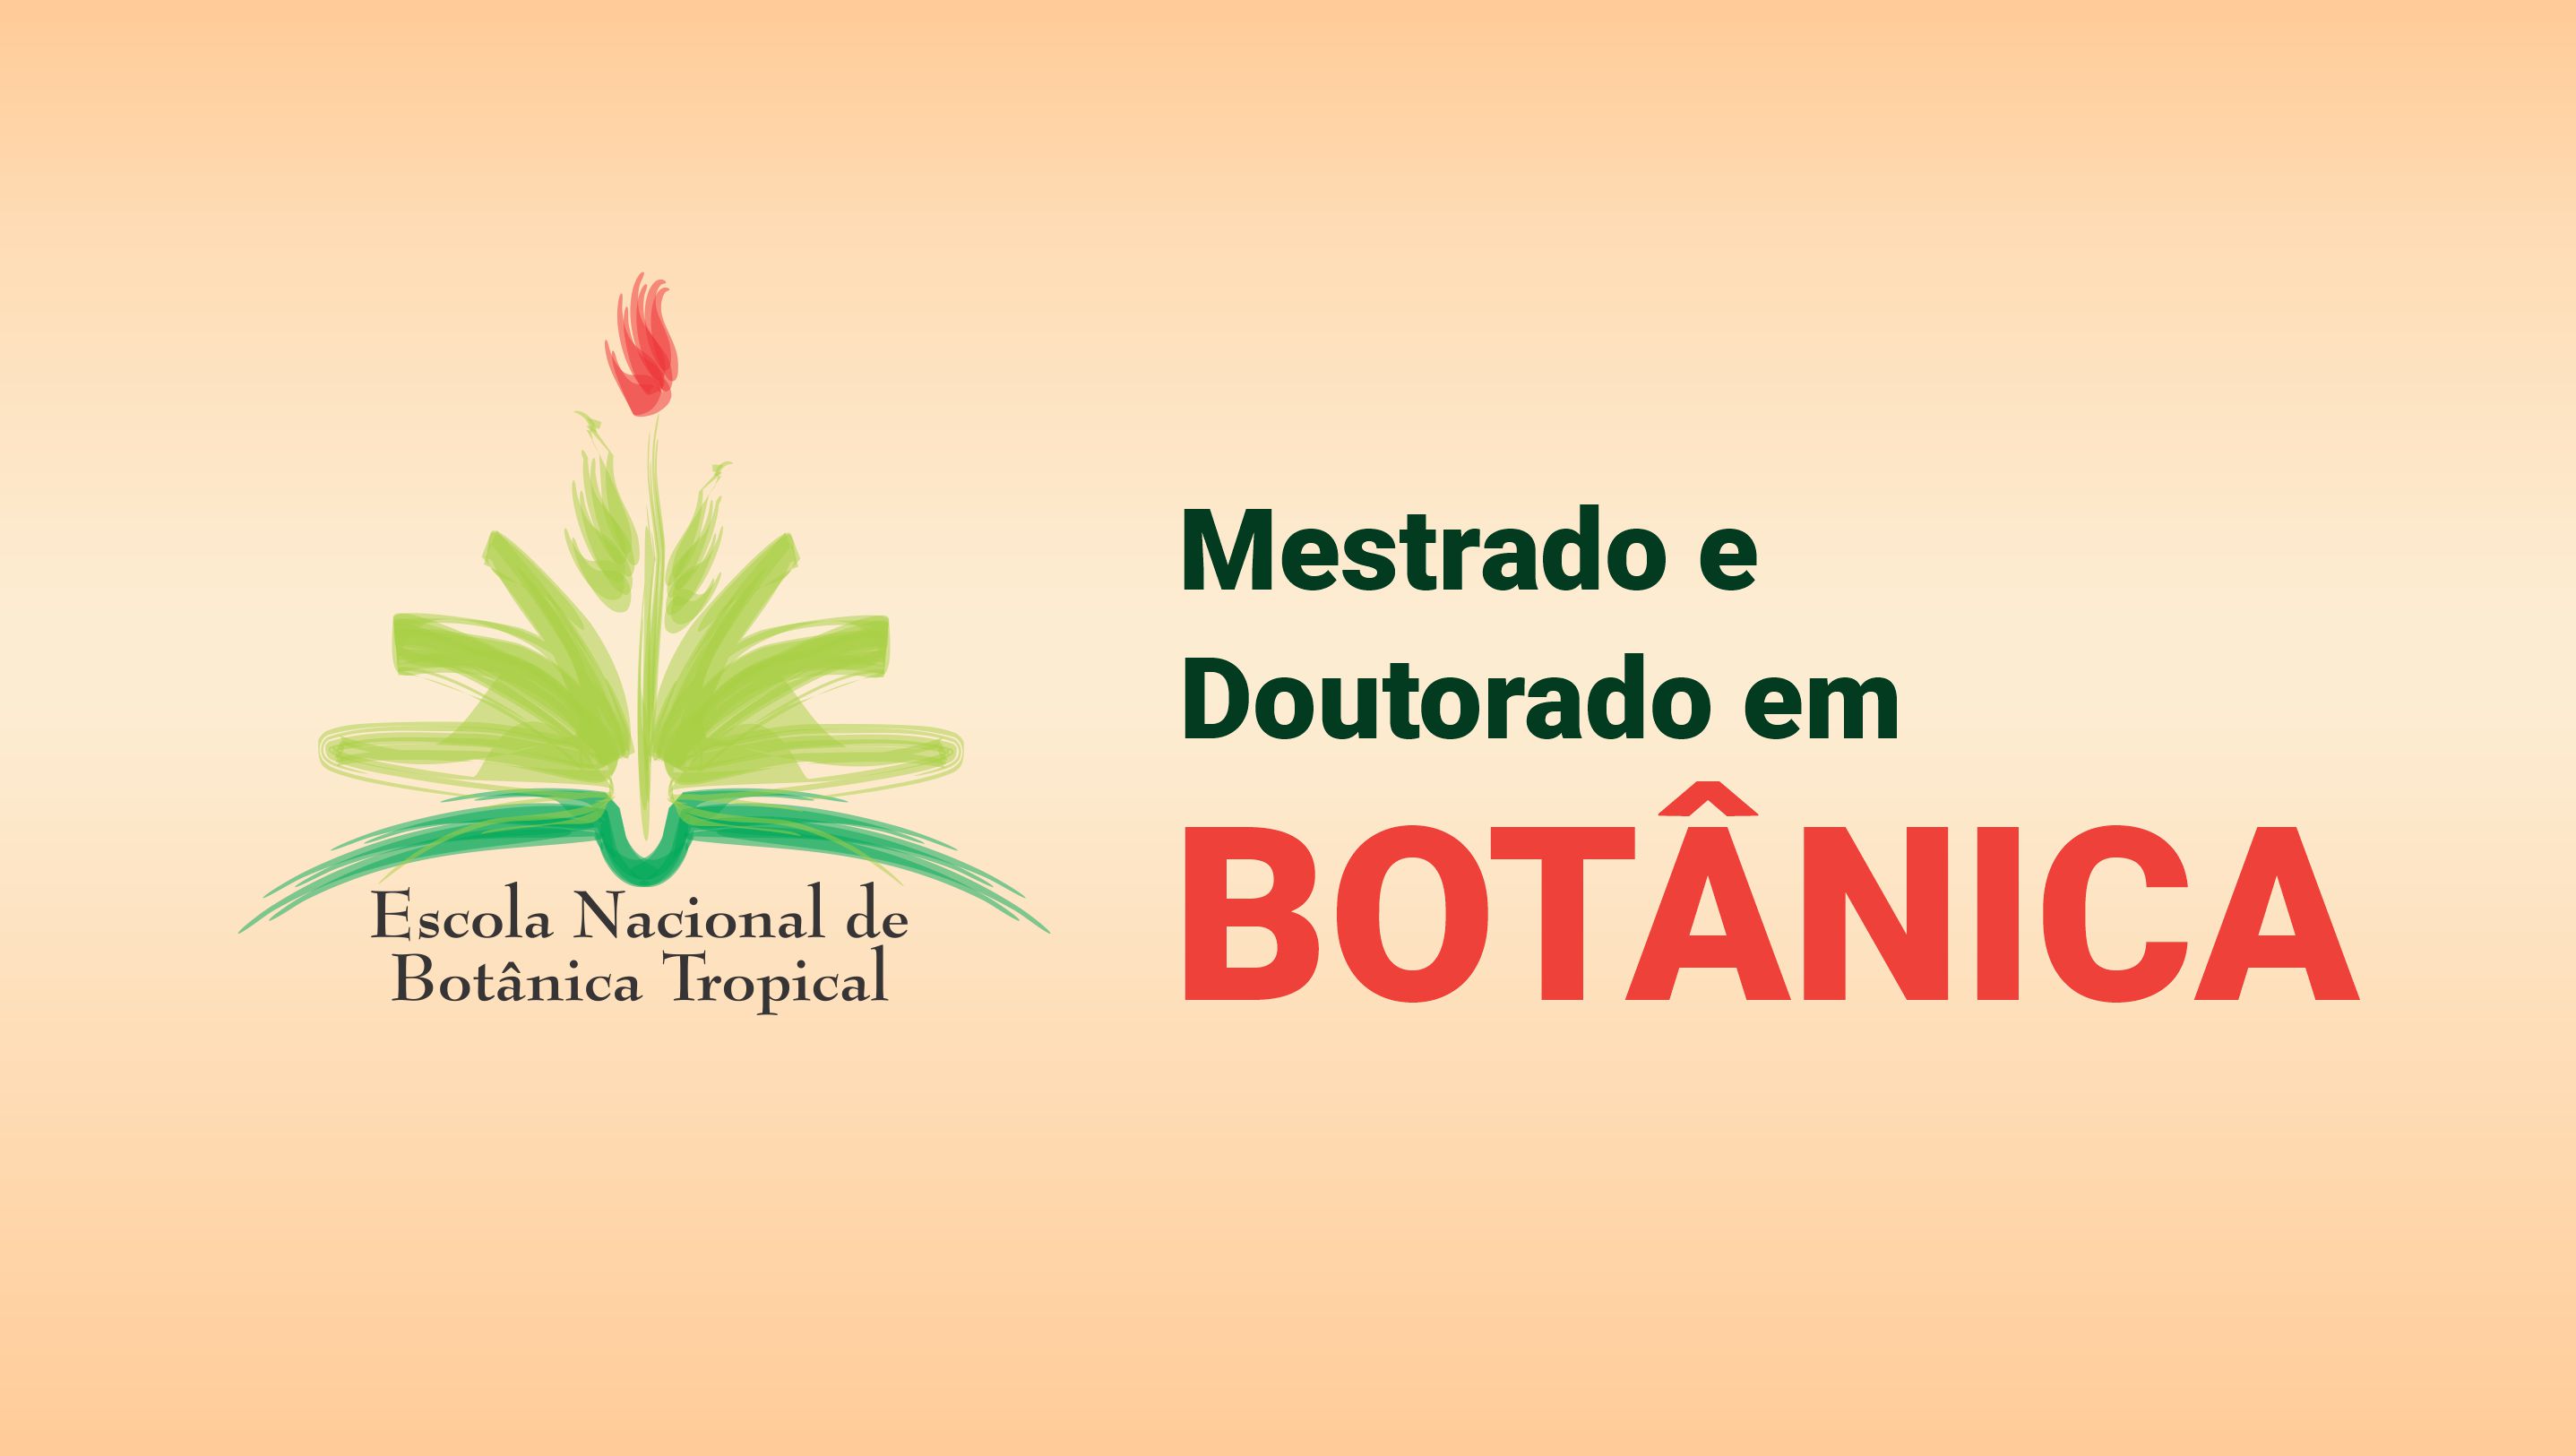 Abertas as inscrições para mestrado e doutorado em Botânica no Jardim Botânico do Rio de Janeiro